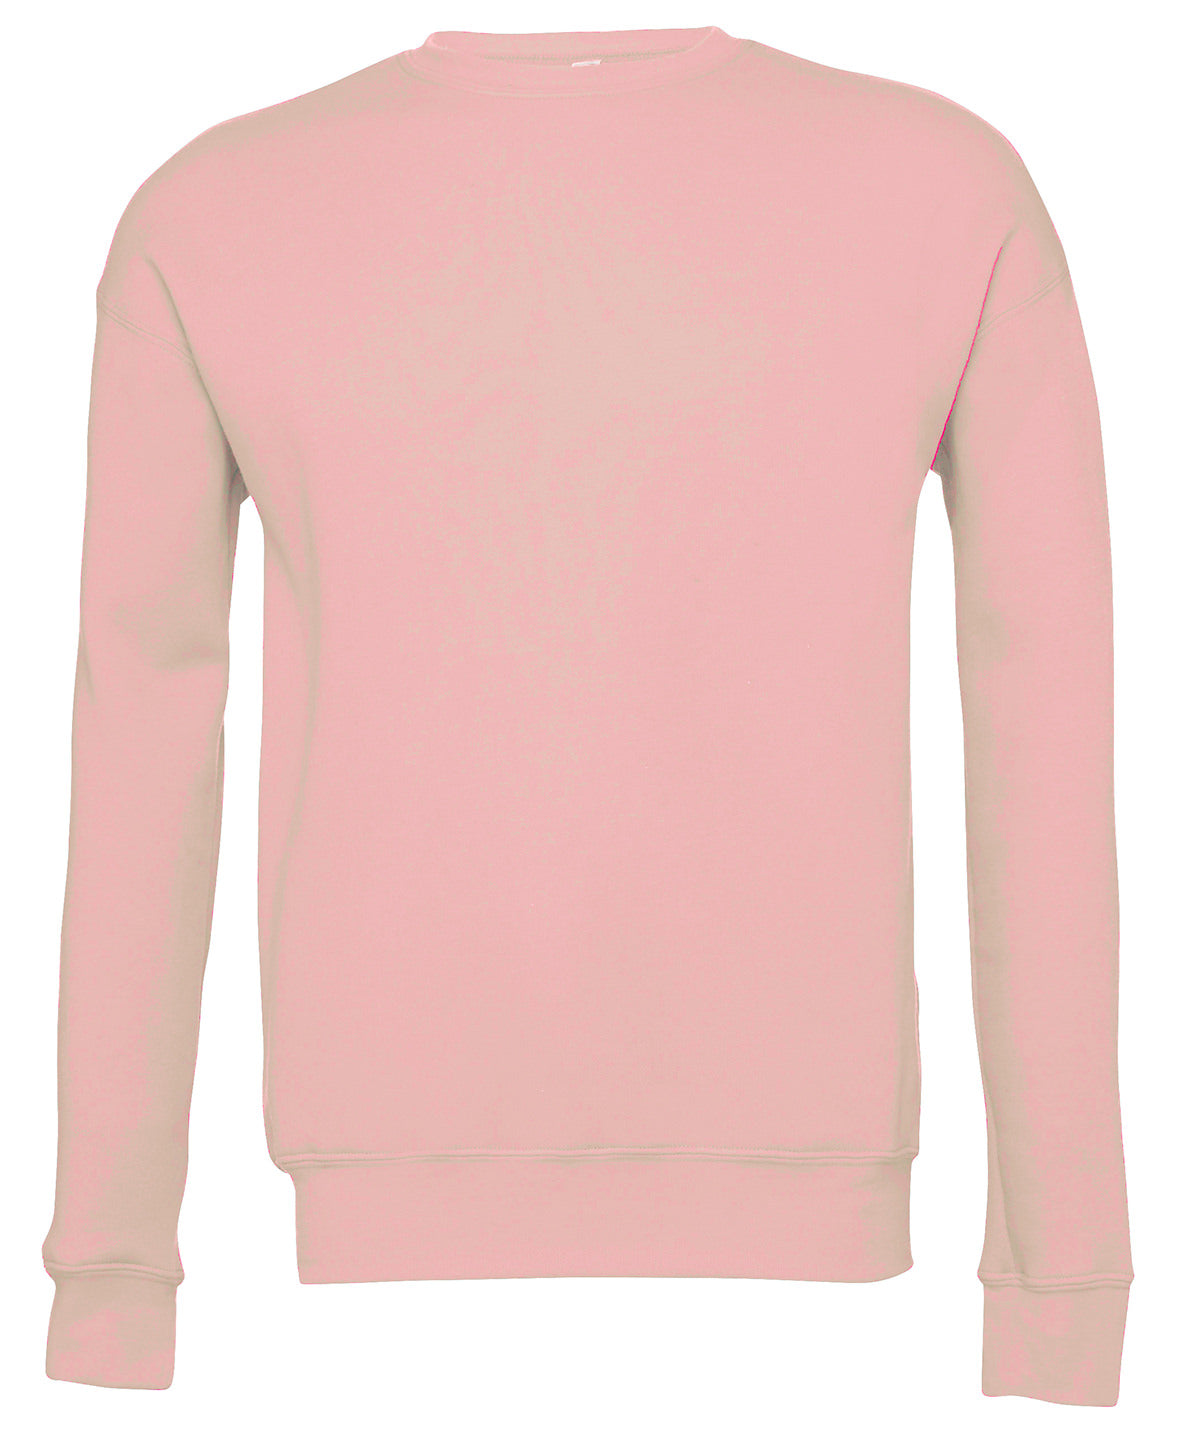 Personalised Sweatshirts - Black Bella Canvas Unisex drop shoulder fleece